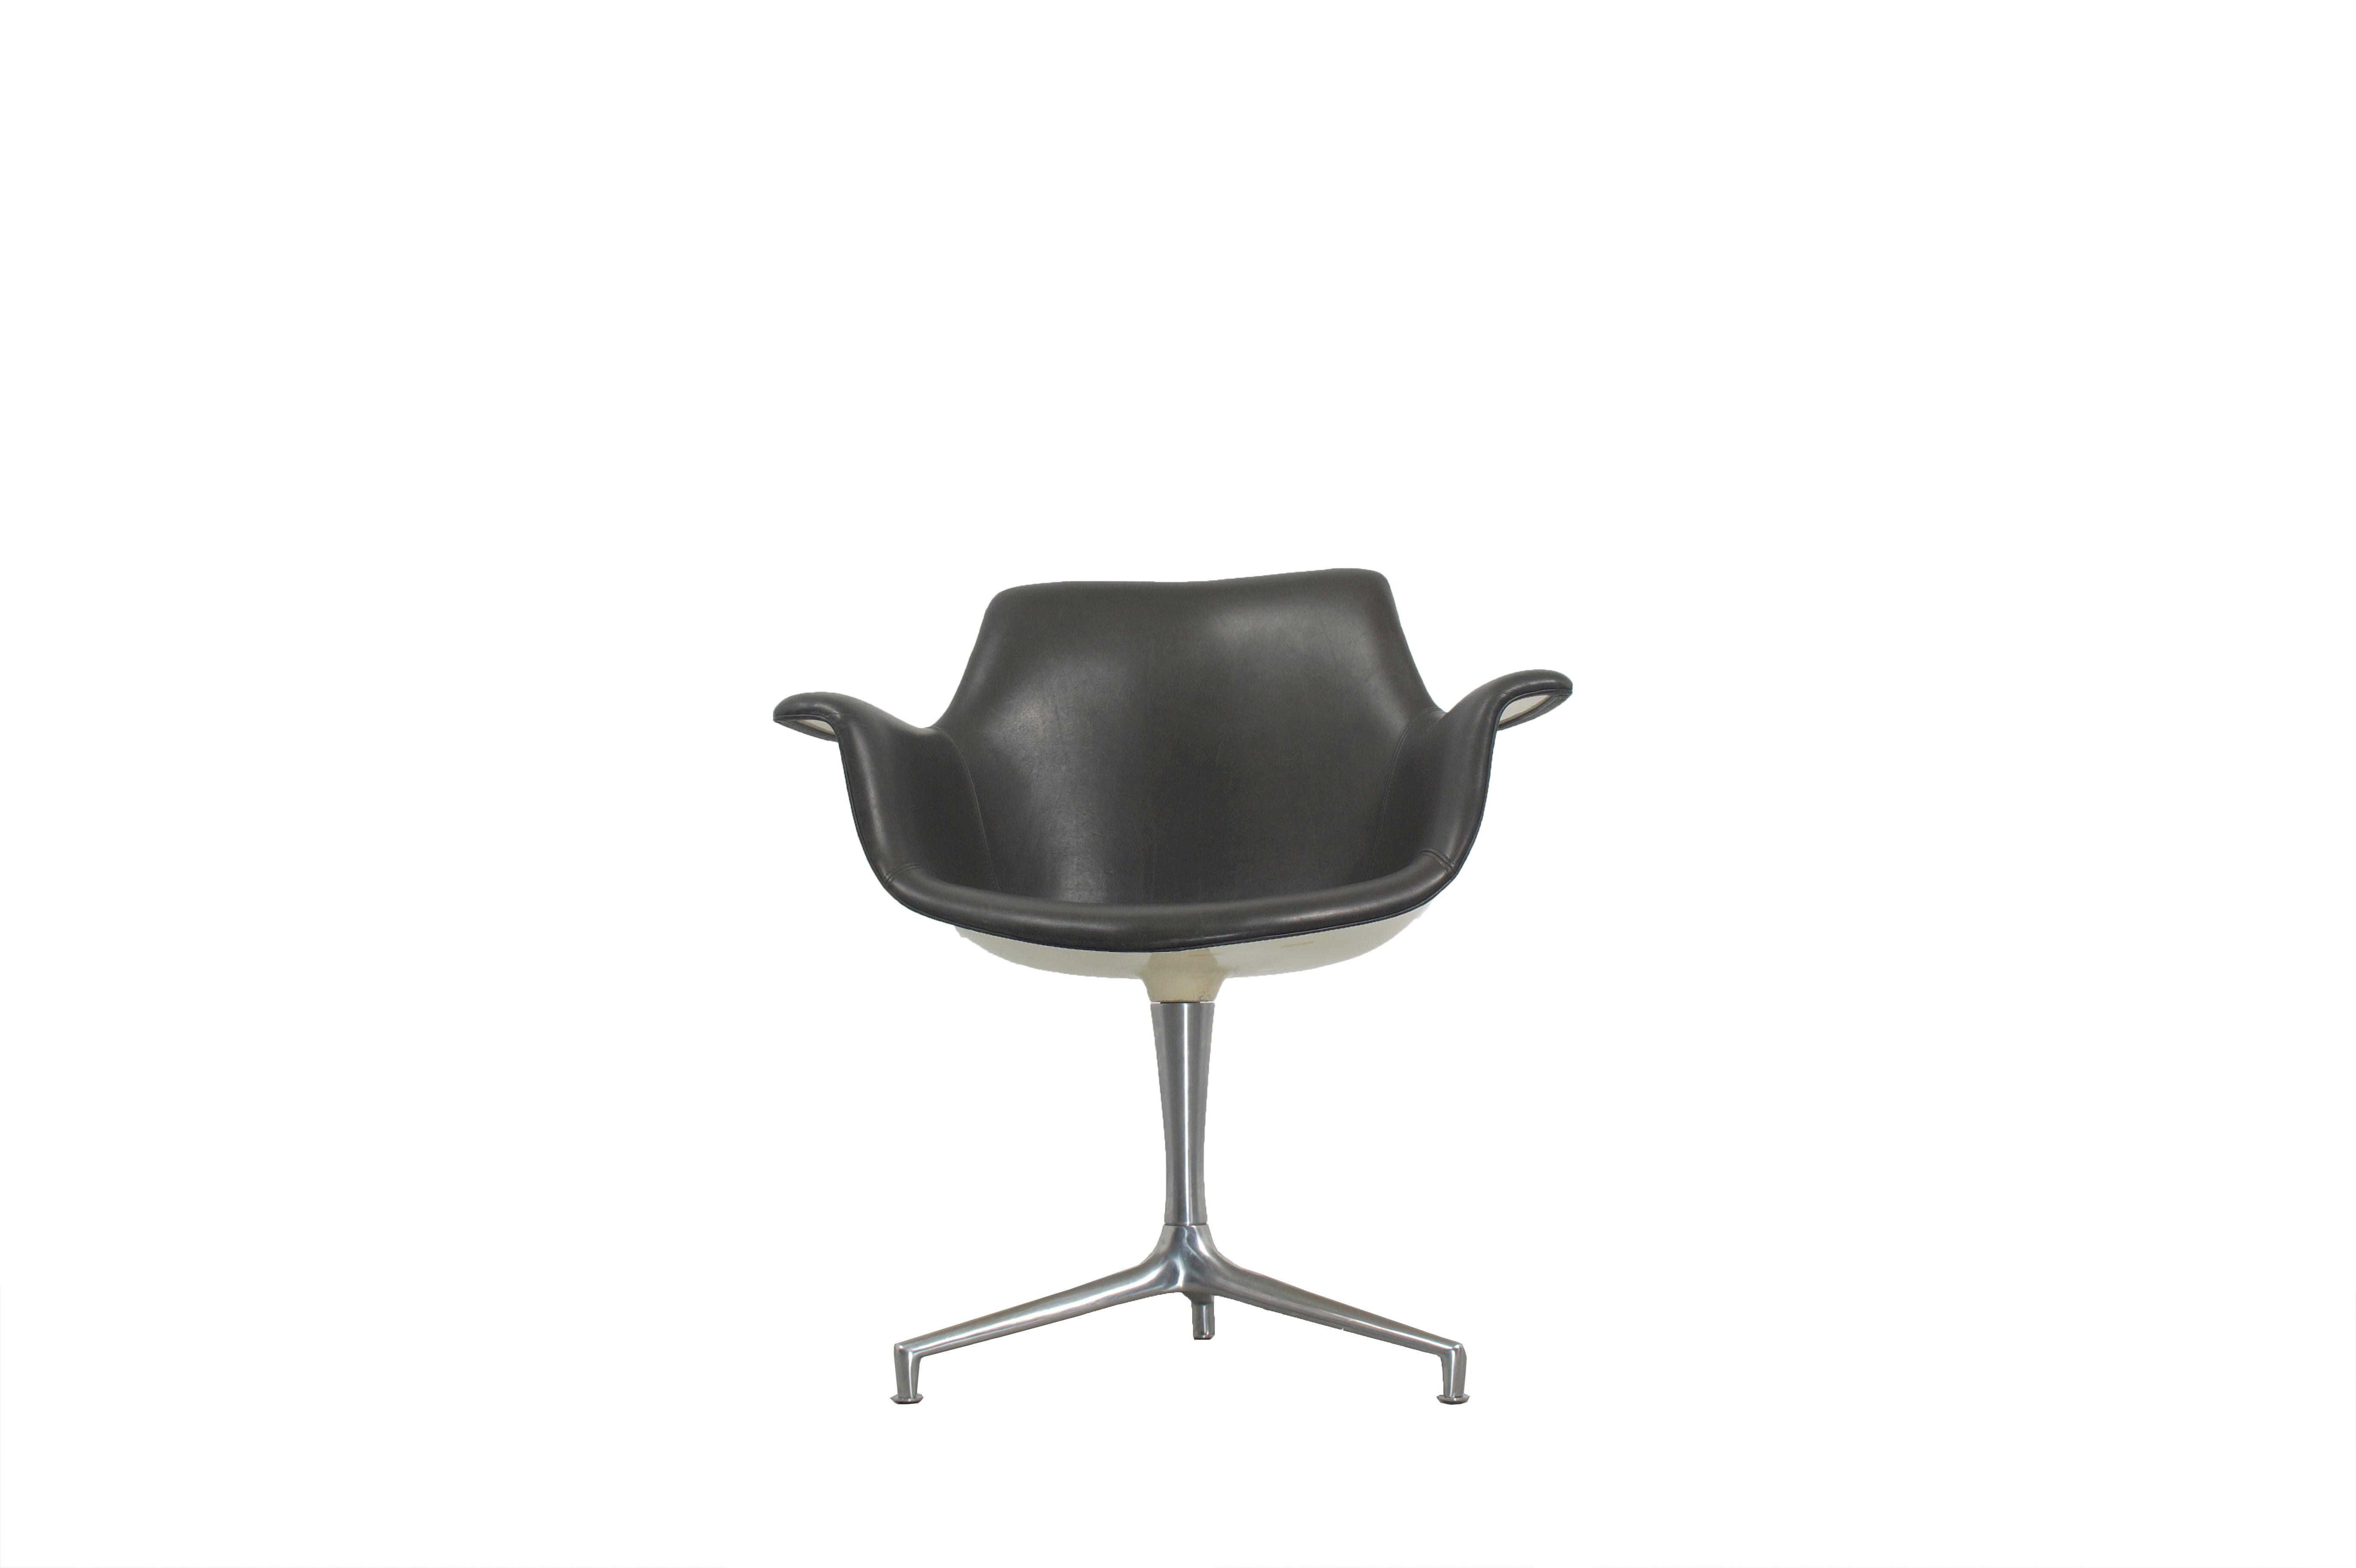 Rare fauteuil de direction en cuir JK810 conçu par Jorgen Kastholm et fabriqué par le fabricant allemand Alfred Kill International. 

La coque en fibre de verre est laquée et recouverte de cuir naturel noir et repose sur la base chromée et non